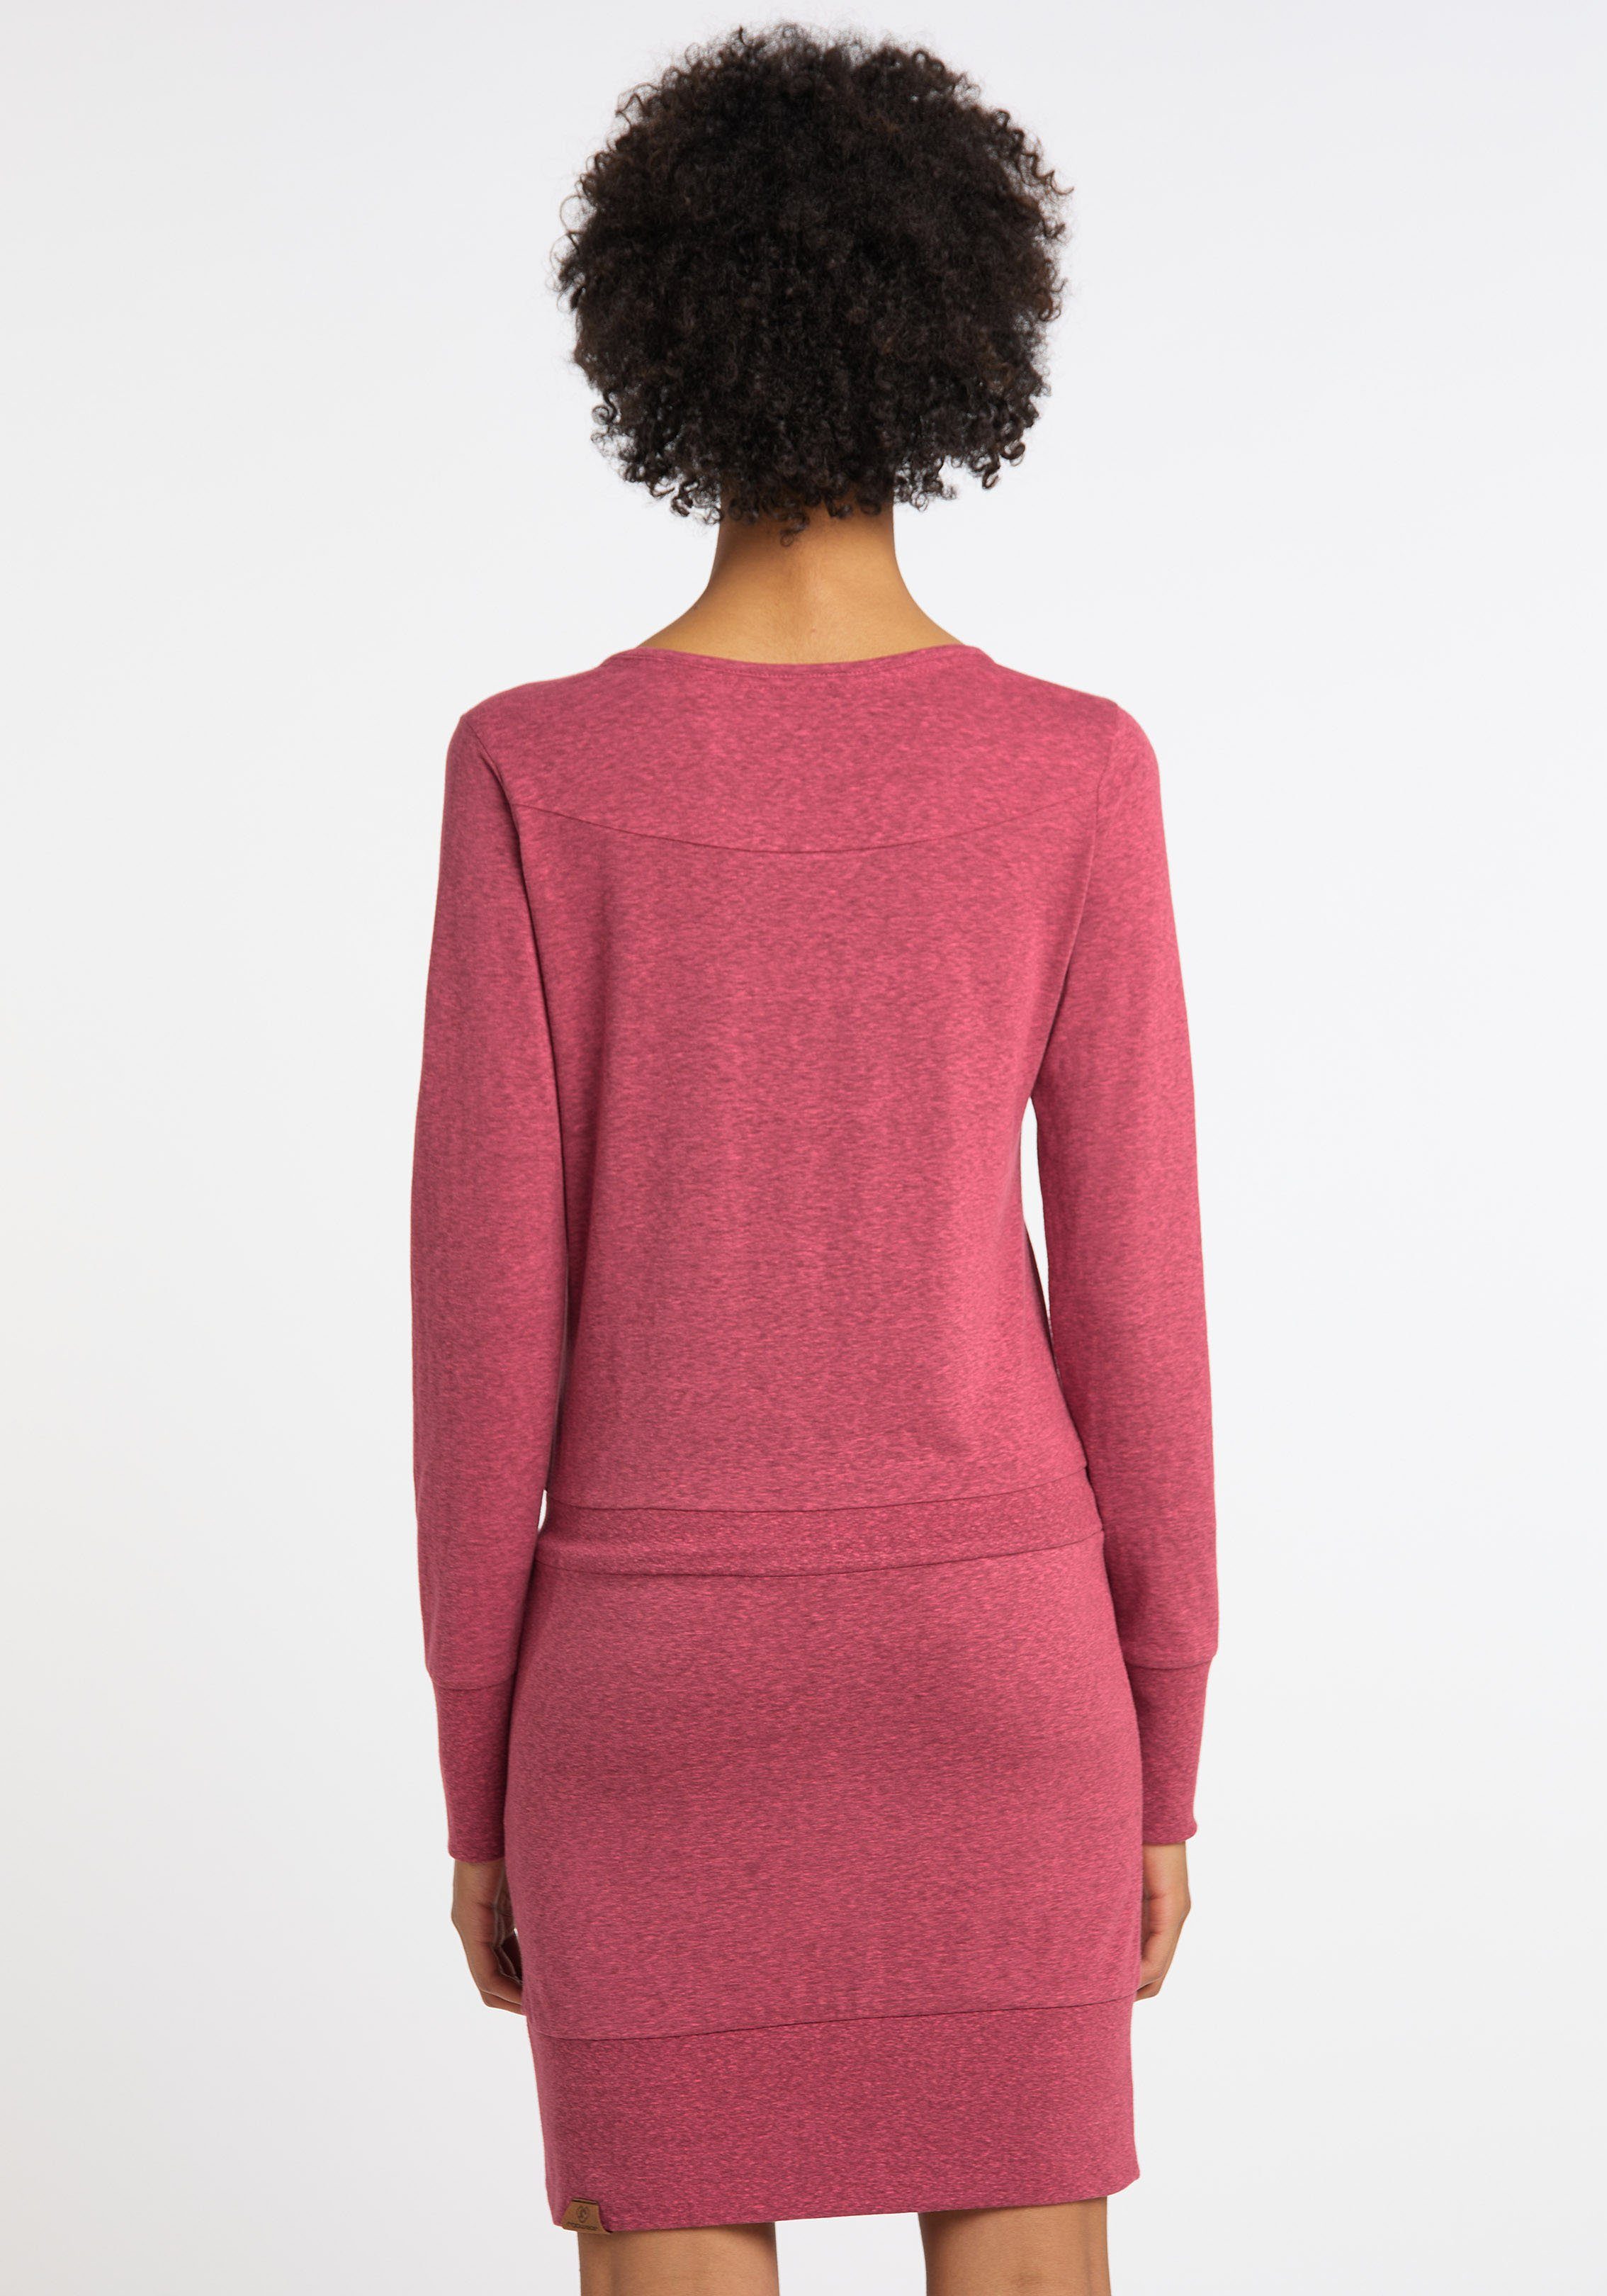 Ragwear Jerseykleid kontrastigen mit und Kordelzug rose Zierperlen-Besatz 4041 ALEXA